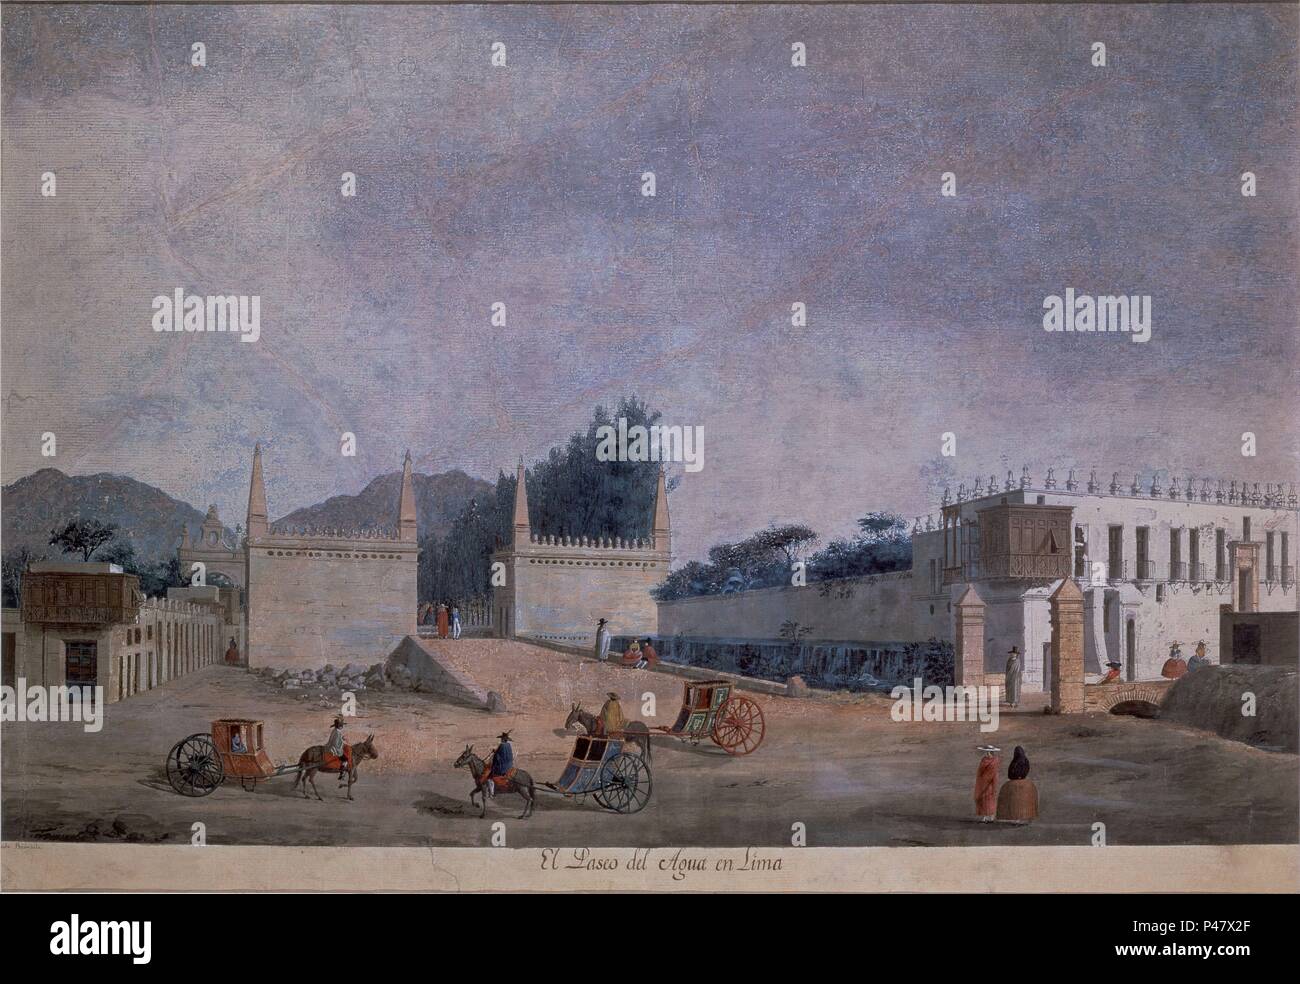 PASEO DEL AGUA EN LIMA - SIGLO XVIII - EXPEDICION MALASPINA. Author: Fernando Brambila (1763-1832). Location: MUSEO NAVAL / MINISTERIO DE MARINA, MADRID, SPAIN. Stock Photo